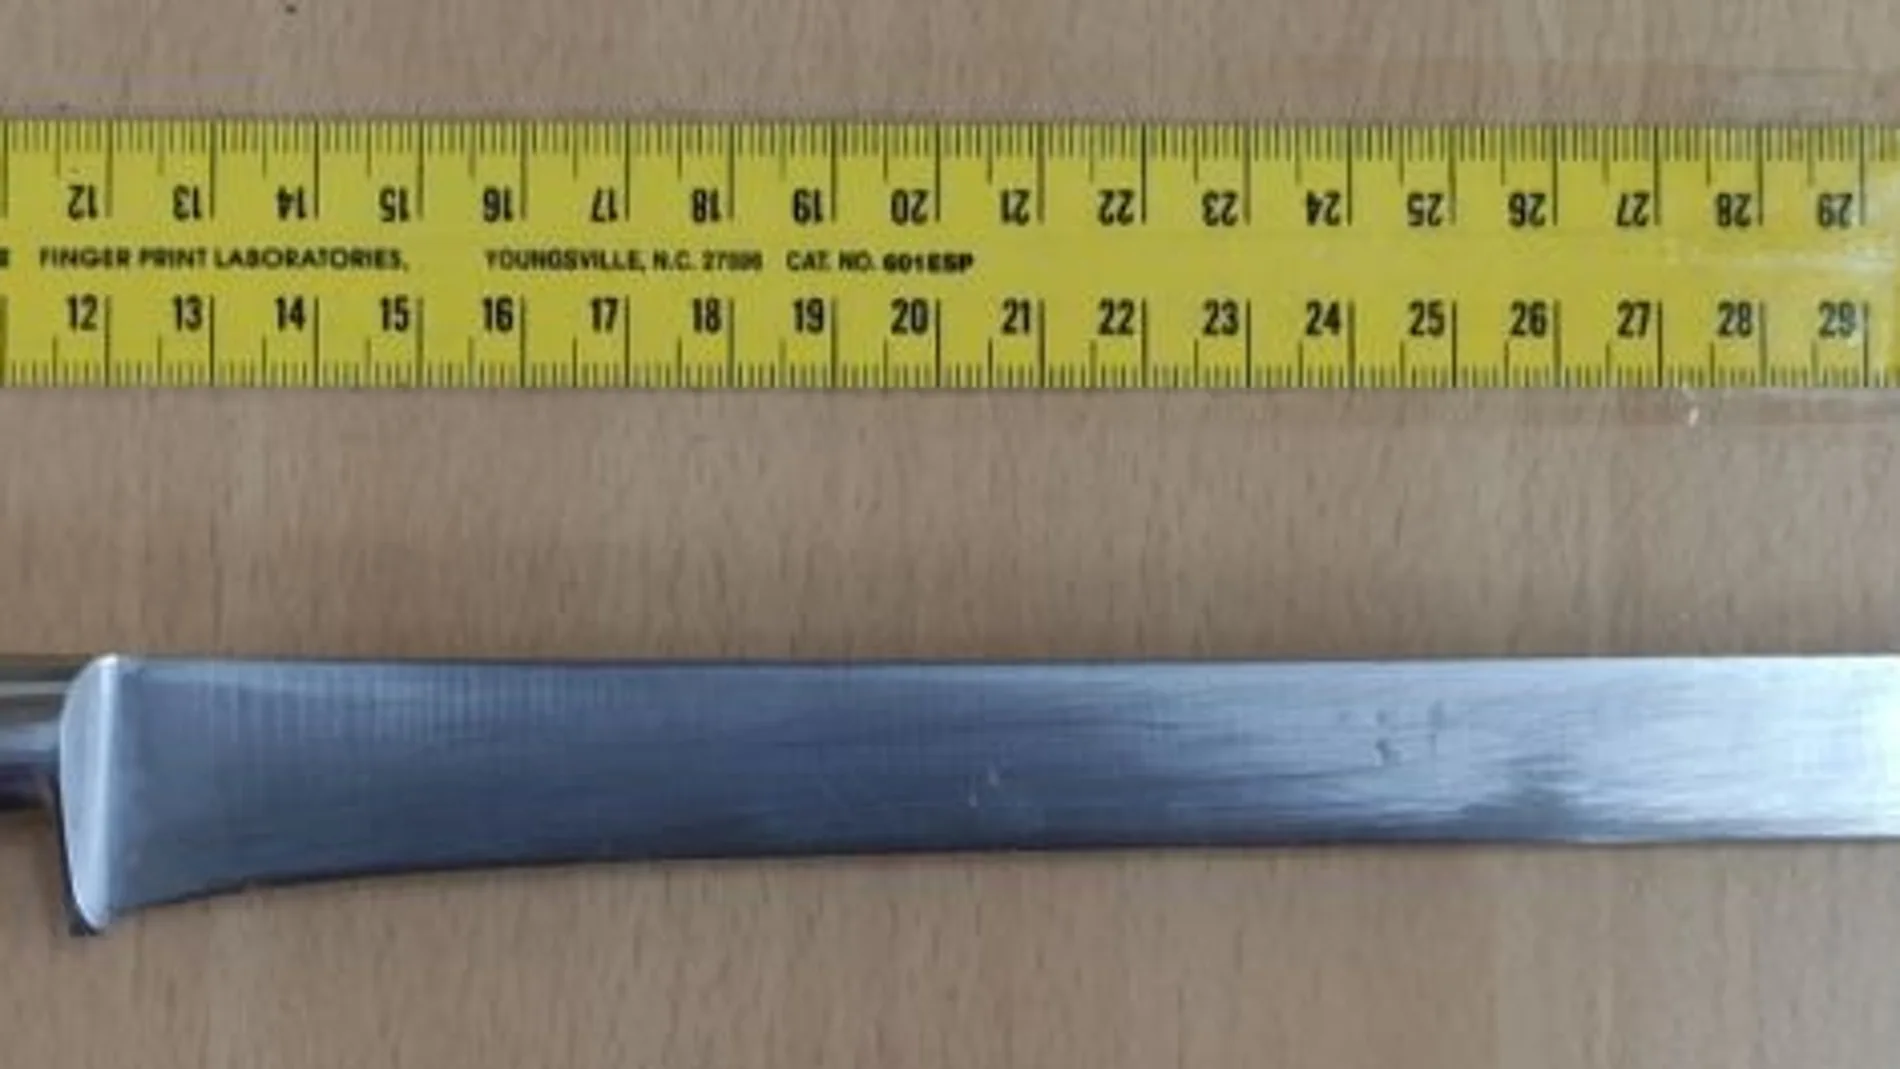 Los agentes hallaron en el registro de su casa los cuchillos utilizados en el atraco anterior